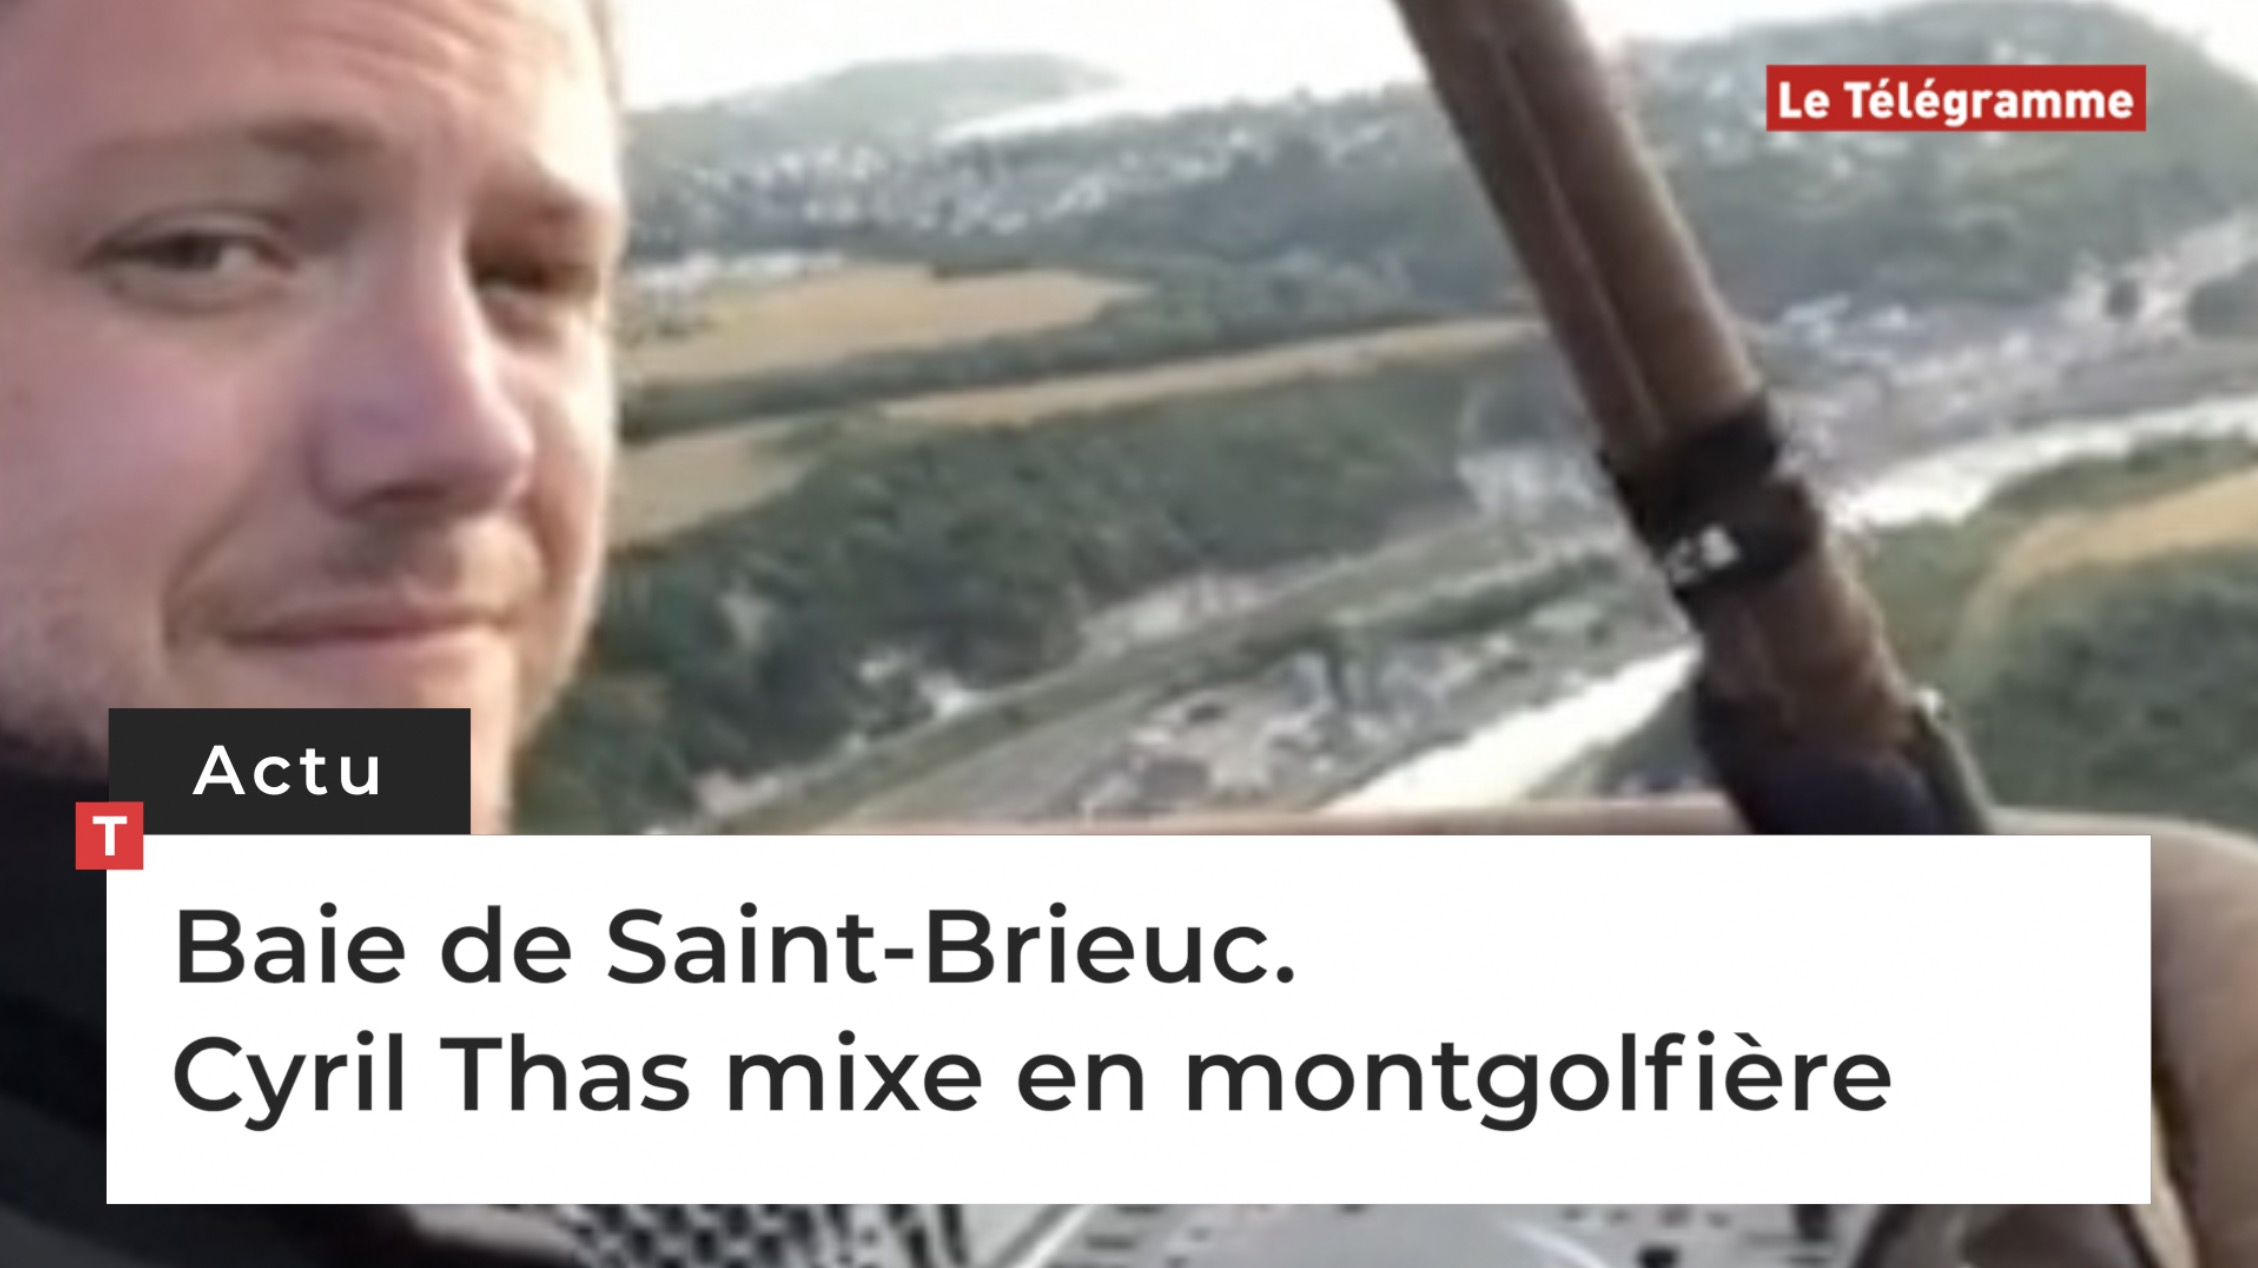 Baie de Saint-Brieuc. Cyril Thas mixe en montgolfière (Le Télégramme)